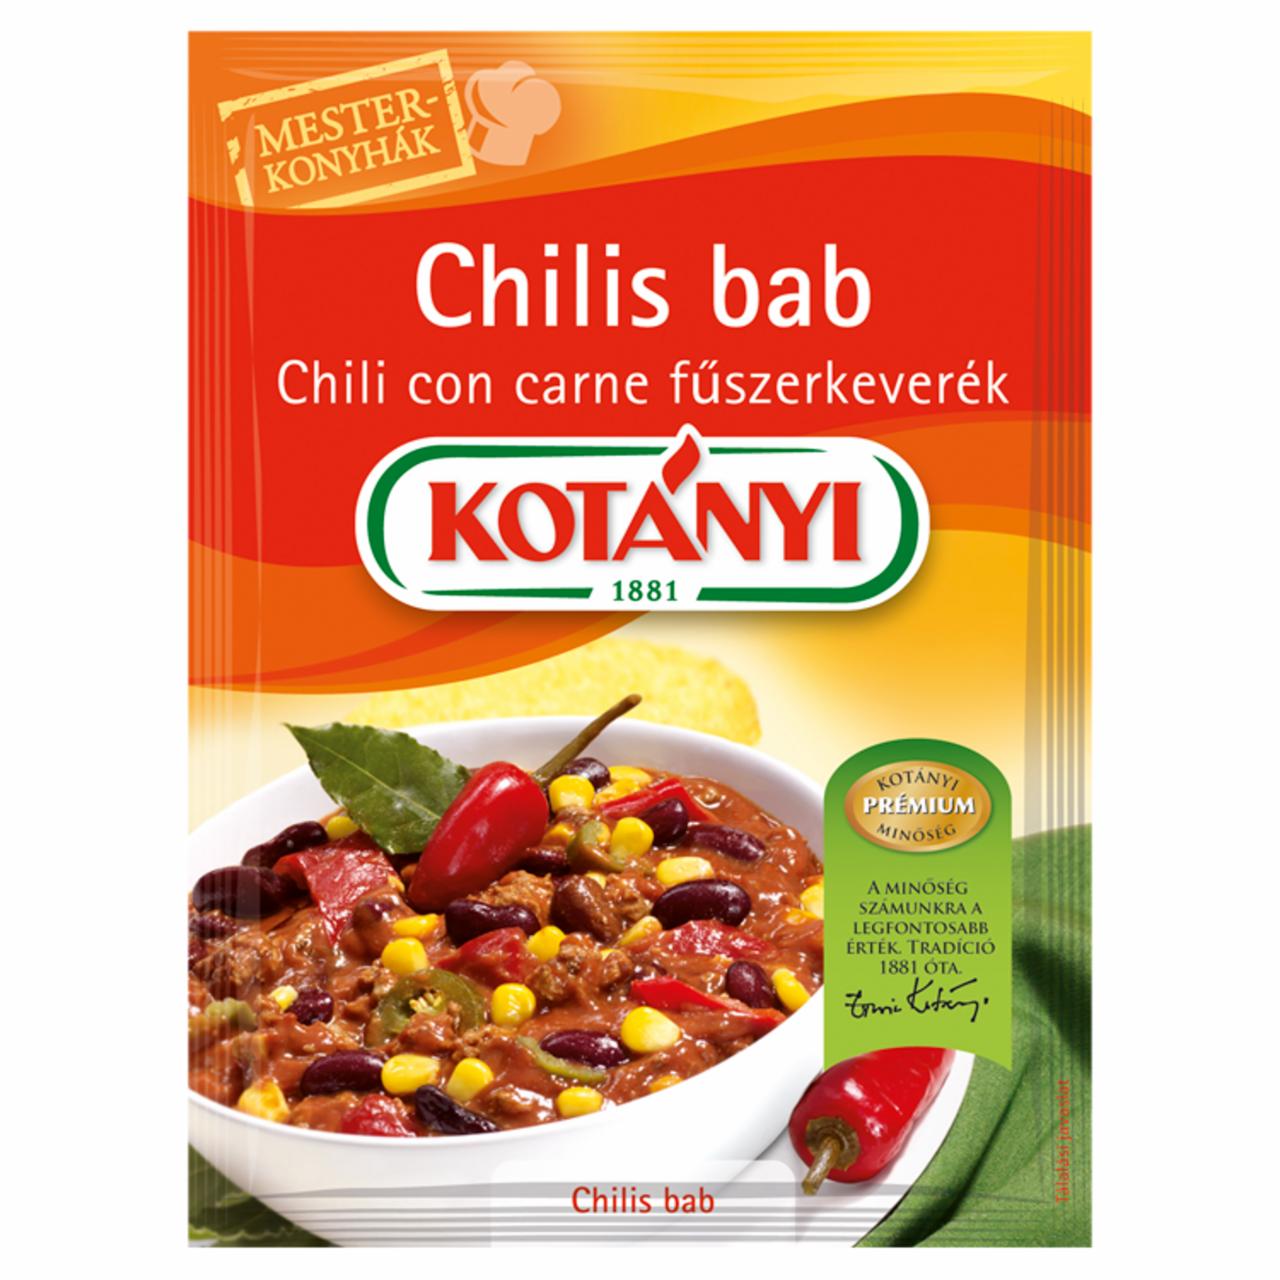 Képek - Kotányi Mesterkonyhák chilis bab chili con carne fűszerkeverék 25 g